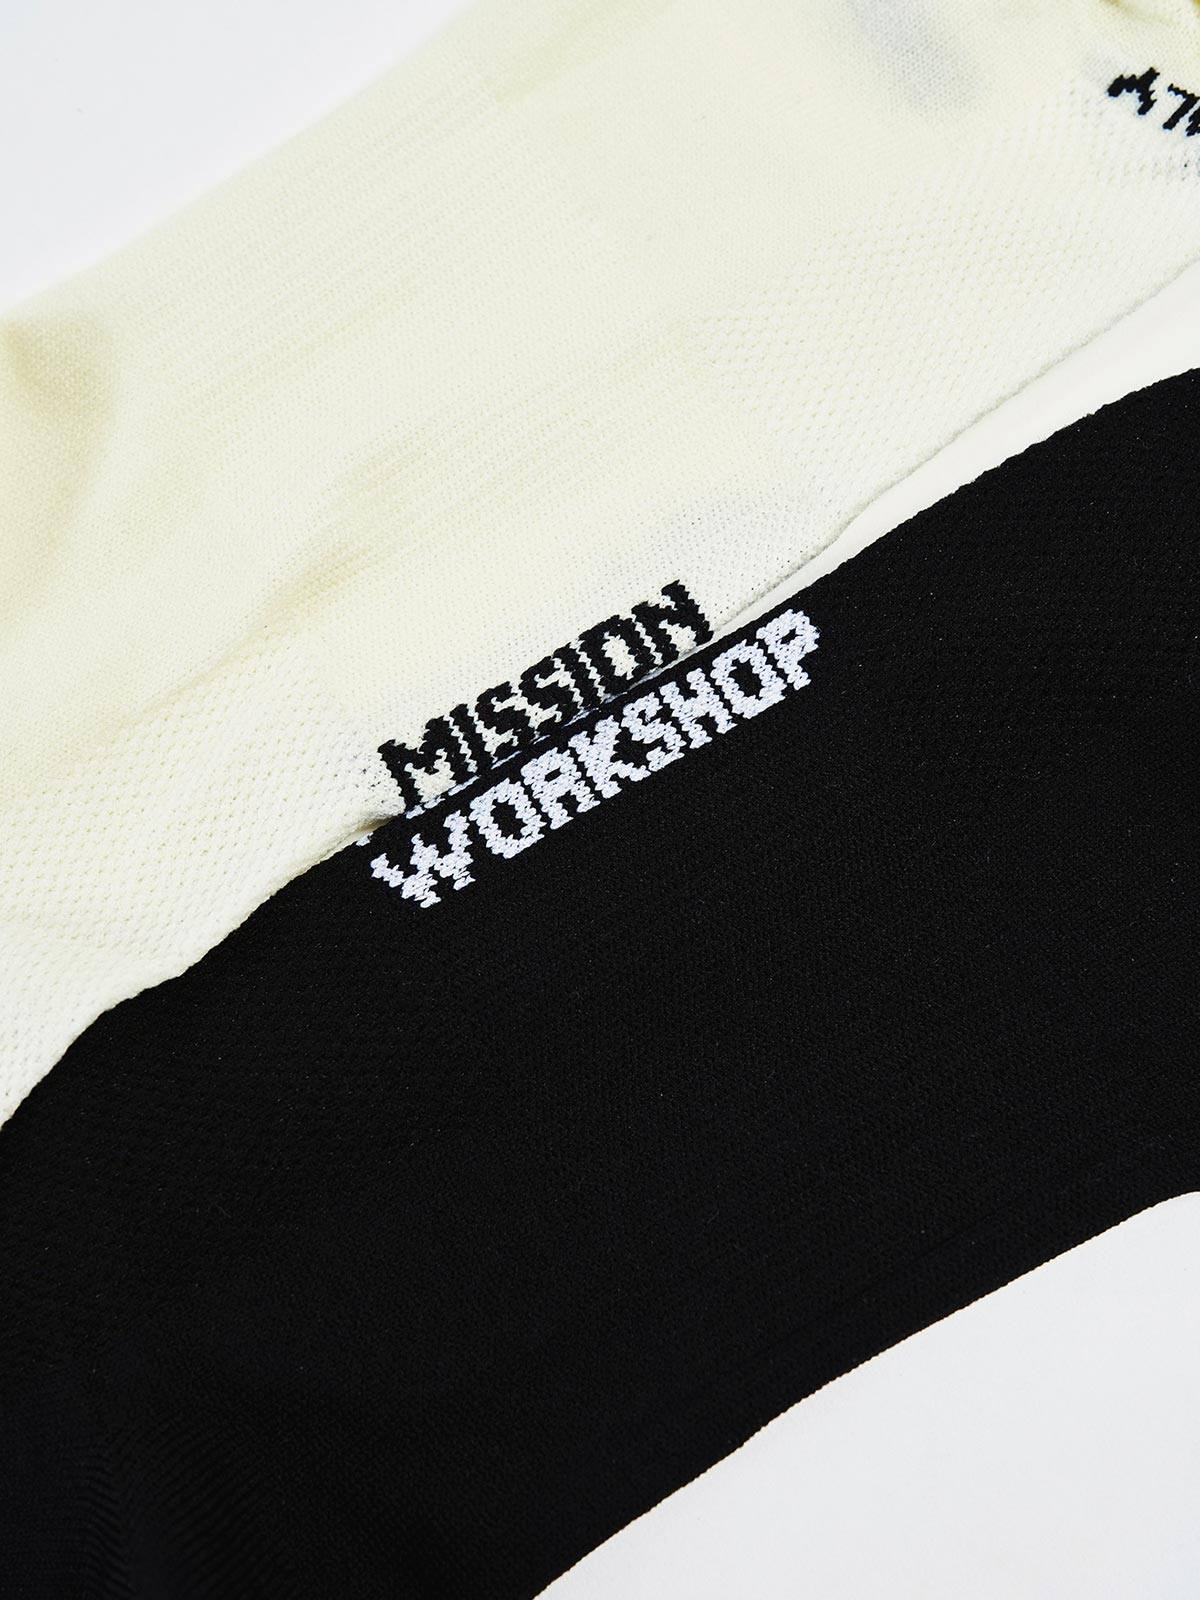 Mission Pro Socks från Mission Workshop - vädertåliga väskor och tekniska kläder - San Francisco och Los Angeles - byggda för att tåla - garanterade för alltid